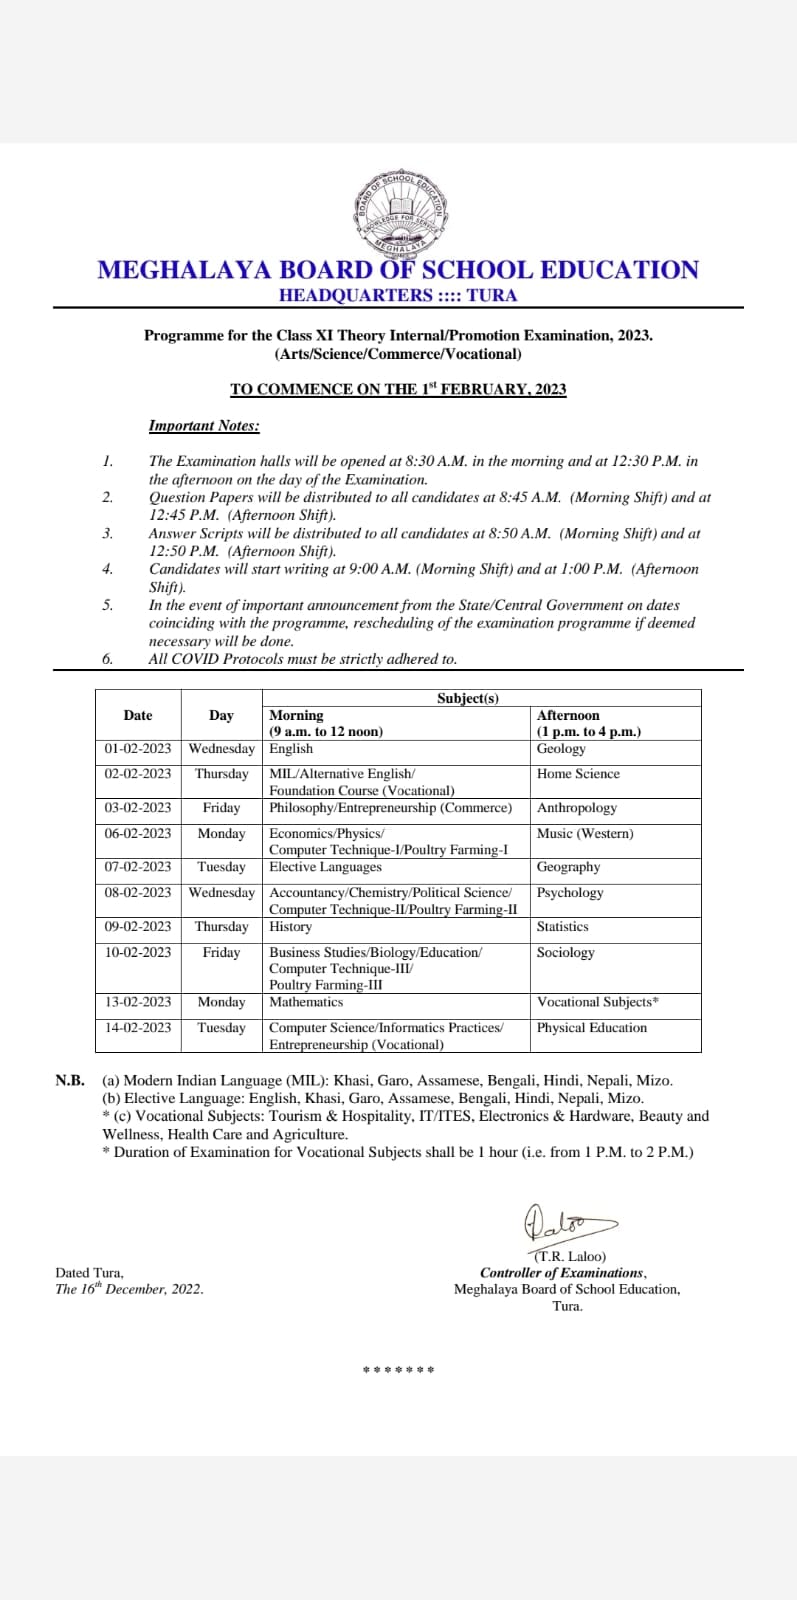 MBOSE Meghalaya Class 11 date sheet 2023